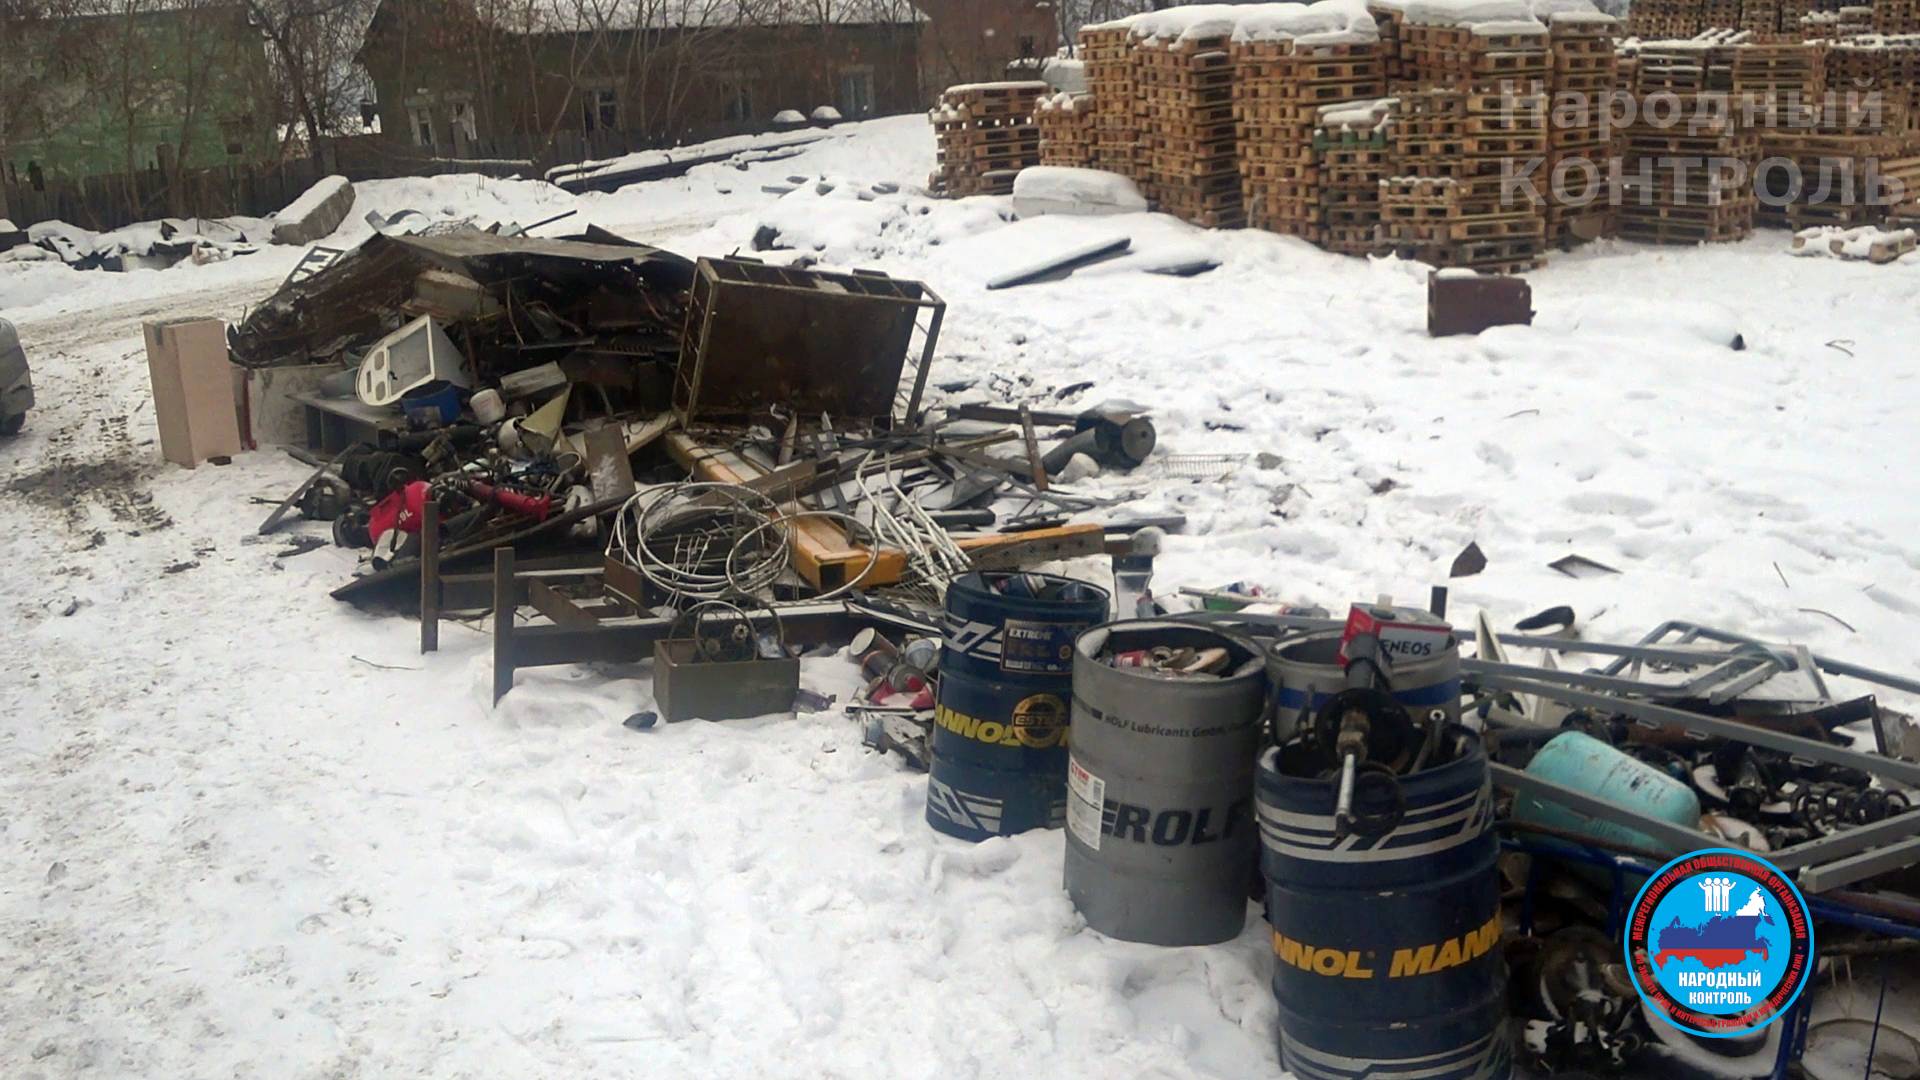 Нелегальные пункты приема лома металла в Чкаловском районе Екатеринбурга